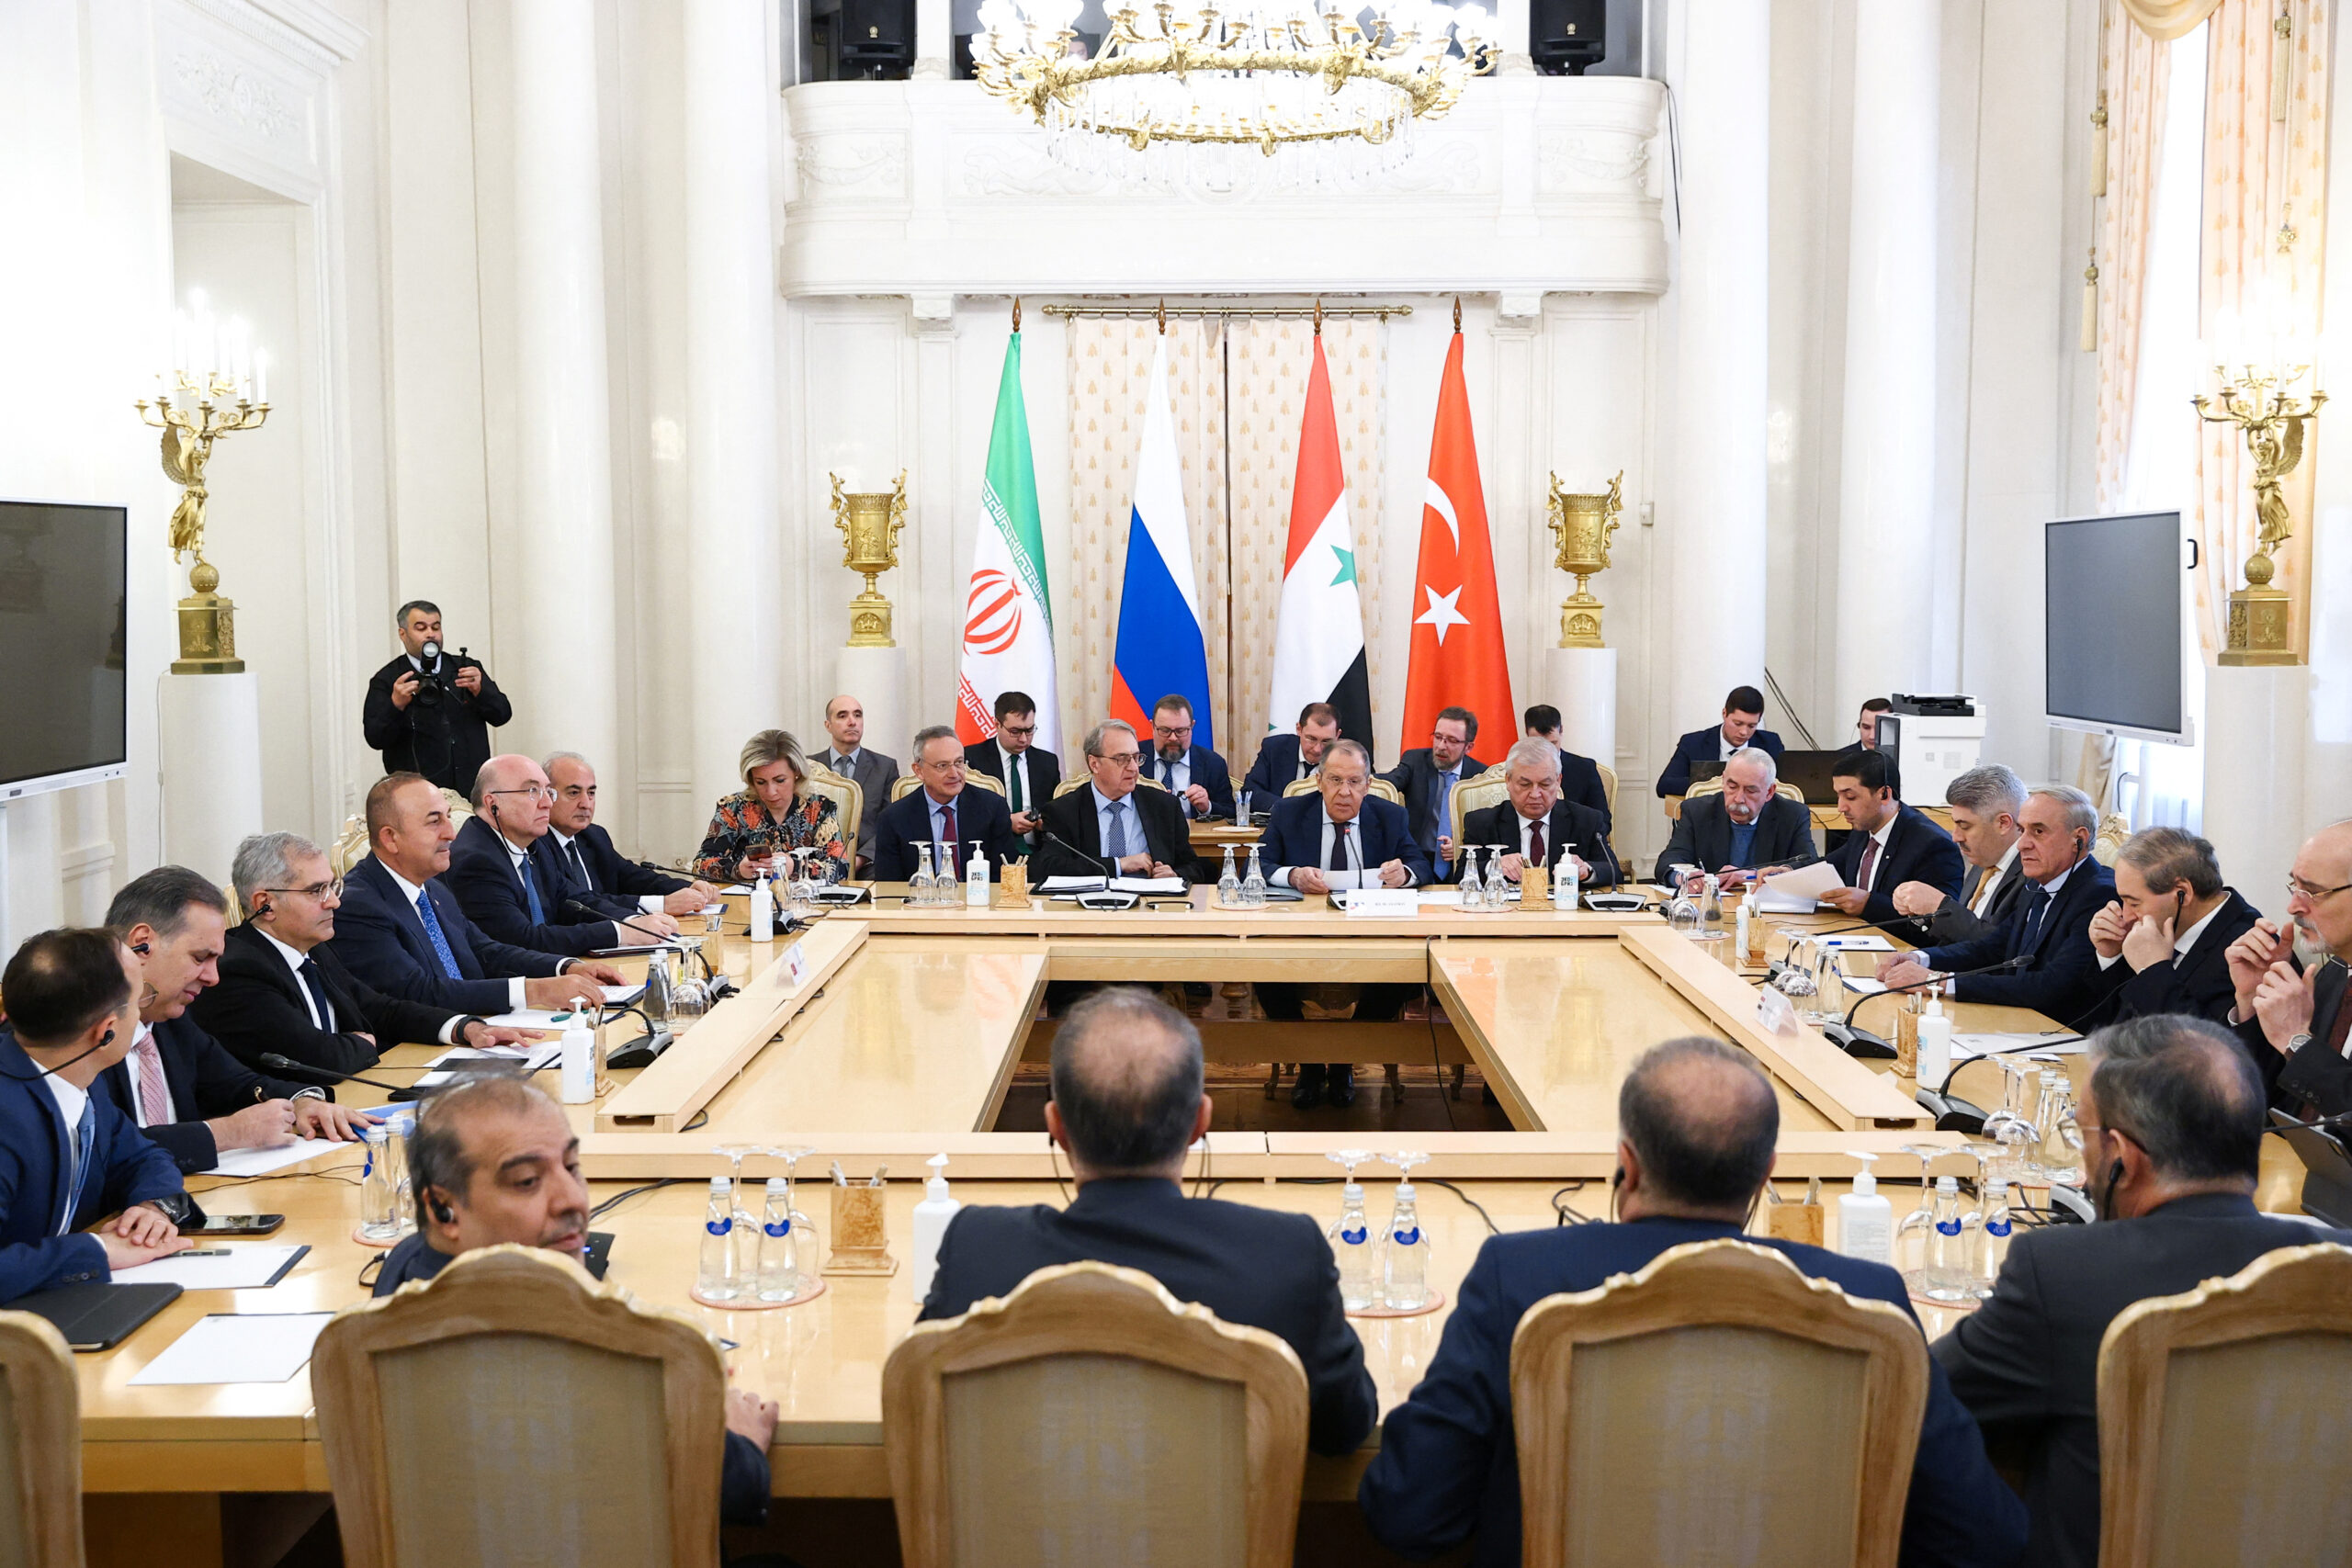 وزراء خارجية ومسؤولون من روسيا وتركيا وسوريا وإيران يحضرون اجتماعًا في موسكو - إنترنت